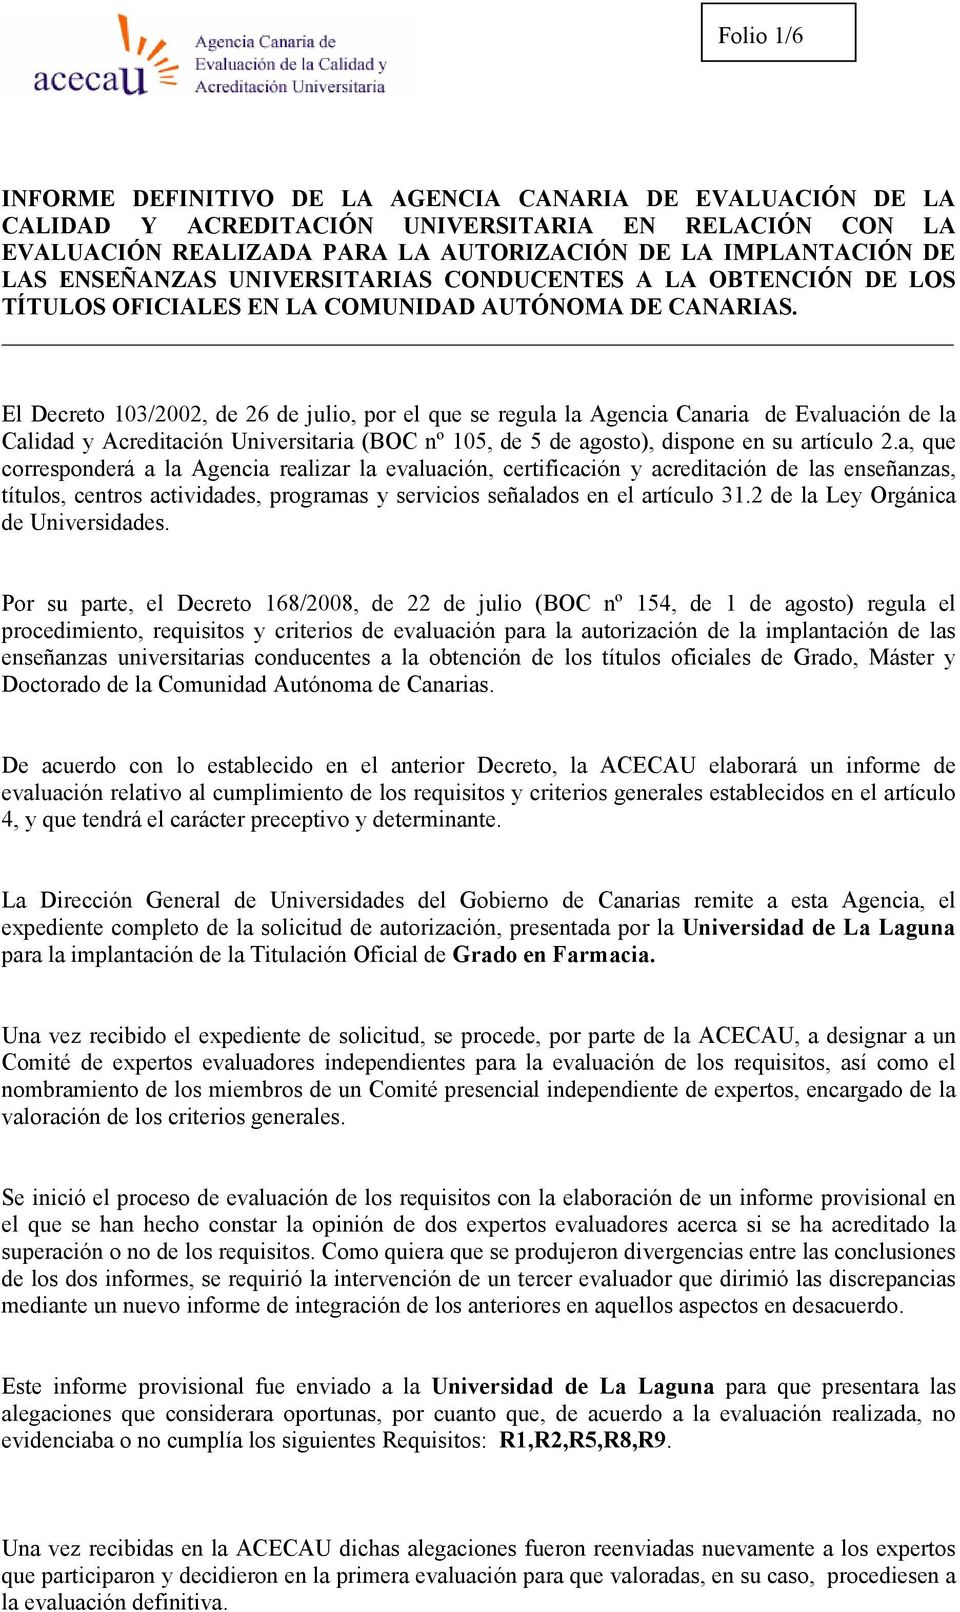 El Decreto 103/2002, de 26 de julio, por el que se regula la Agencia Canaria de Evaluación de la Calidad y Acreditación Universitaria (BOC nº 105, de 5 de agosto), dispone en su artículo 2.